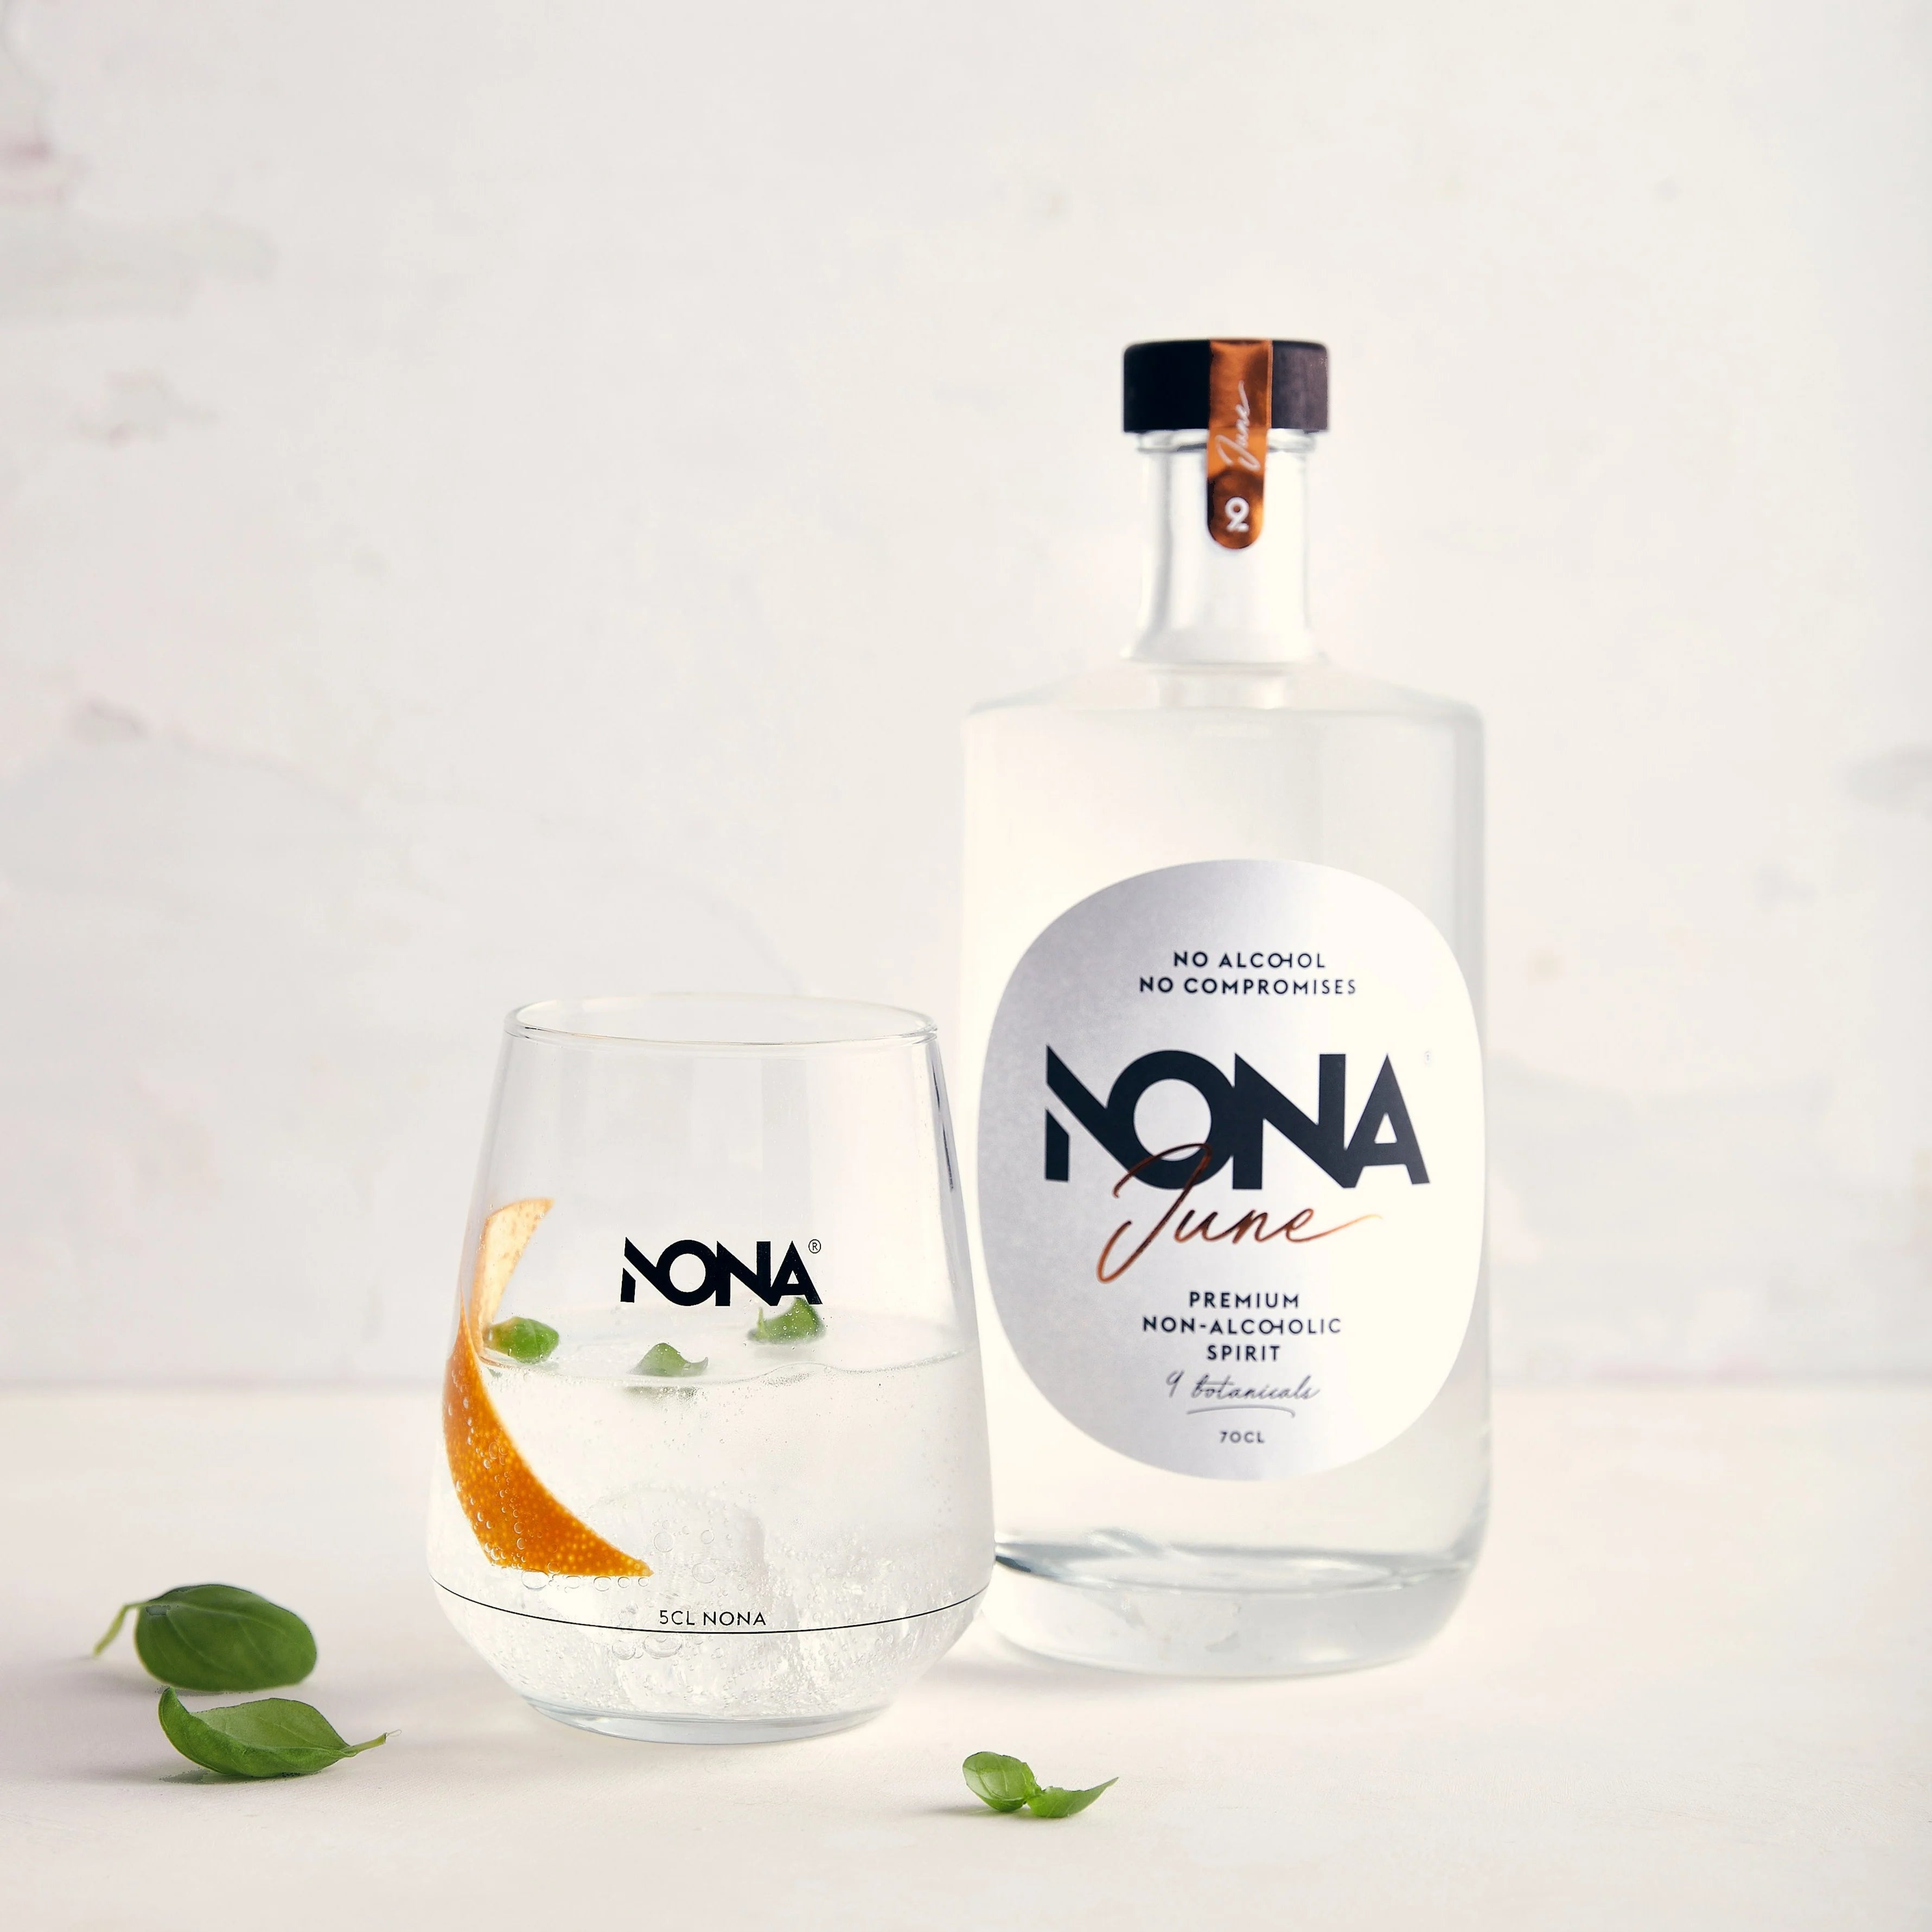 Sfeerfoto van een fles NONA June 70cl. Links staat een glas met daarin de Nona June. 